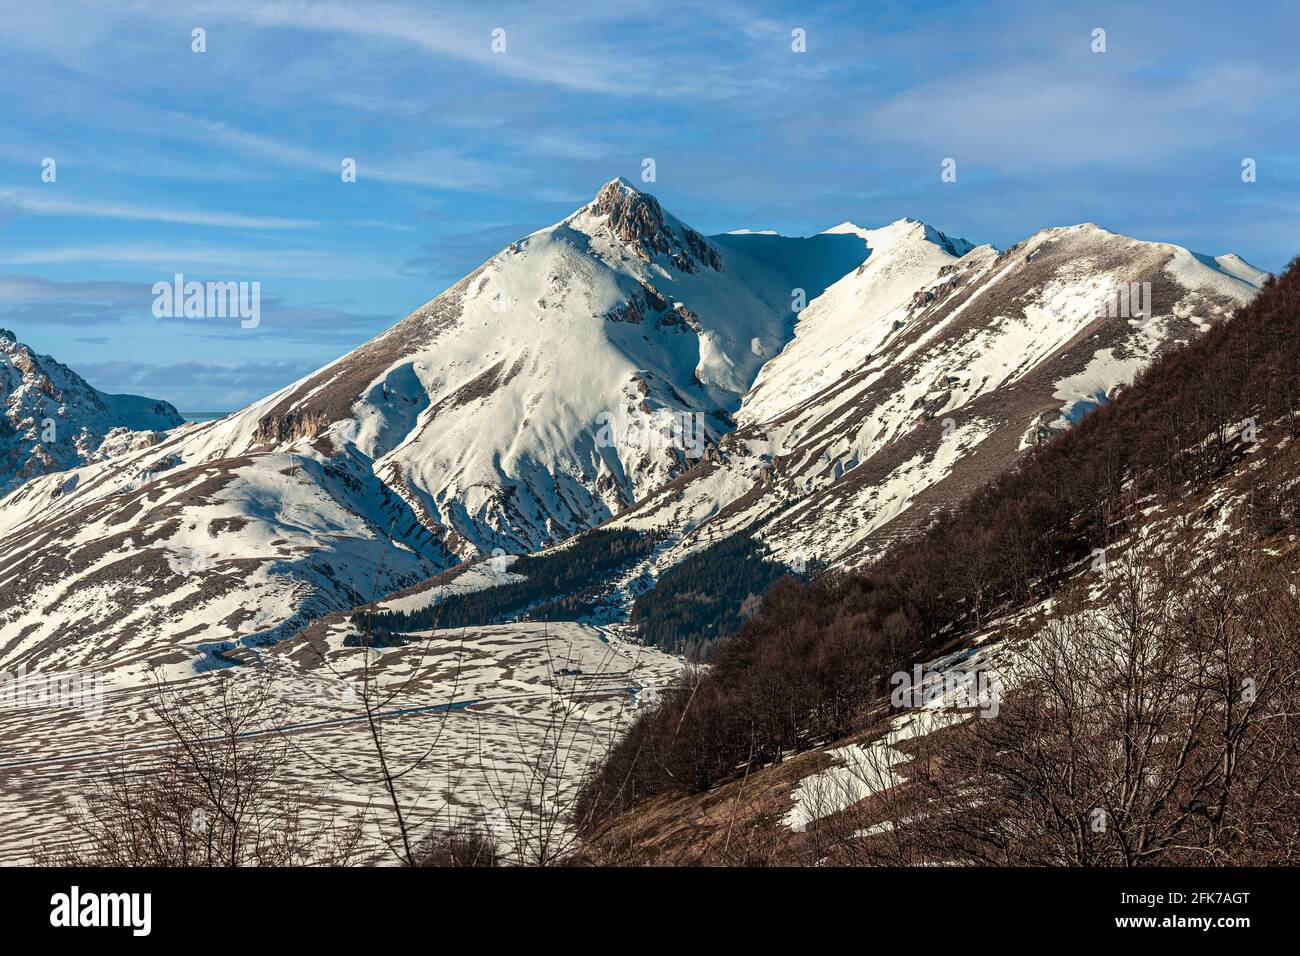 Gran Sasso and Monti della Laga National Park. Mount Camicia with snow on a sunny winter day. Abruzzo, Italy, Europe Stock Photo